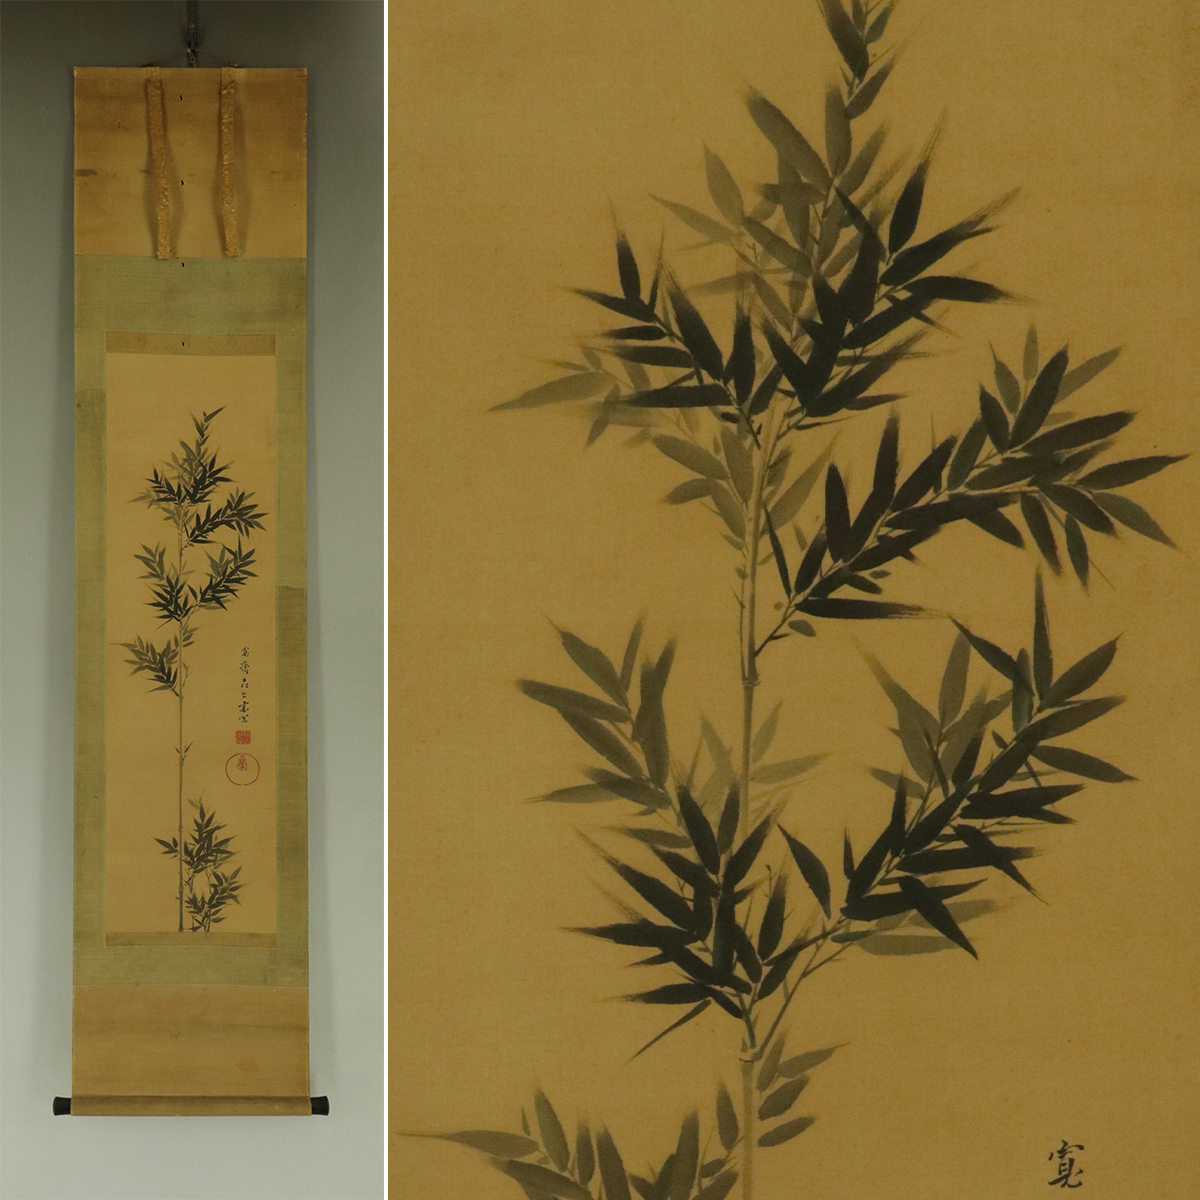 [Copia] Mori Kansai [Dibujo de bambú] ◆ Libro de seda ◆ Caja ◆ Pergamino colgante t04079, cuadro, pintura japonesa, paisaje, Fugetsu